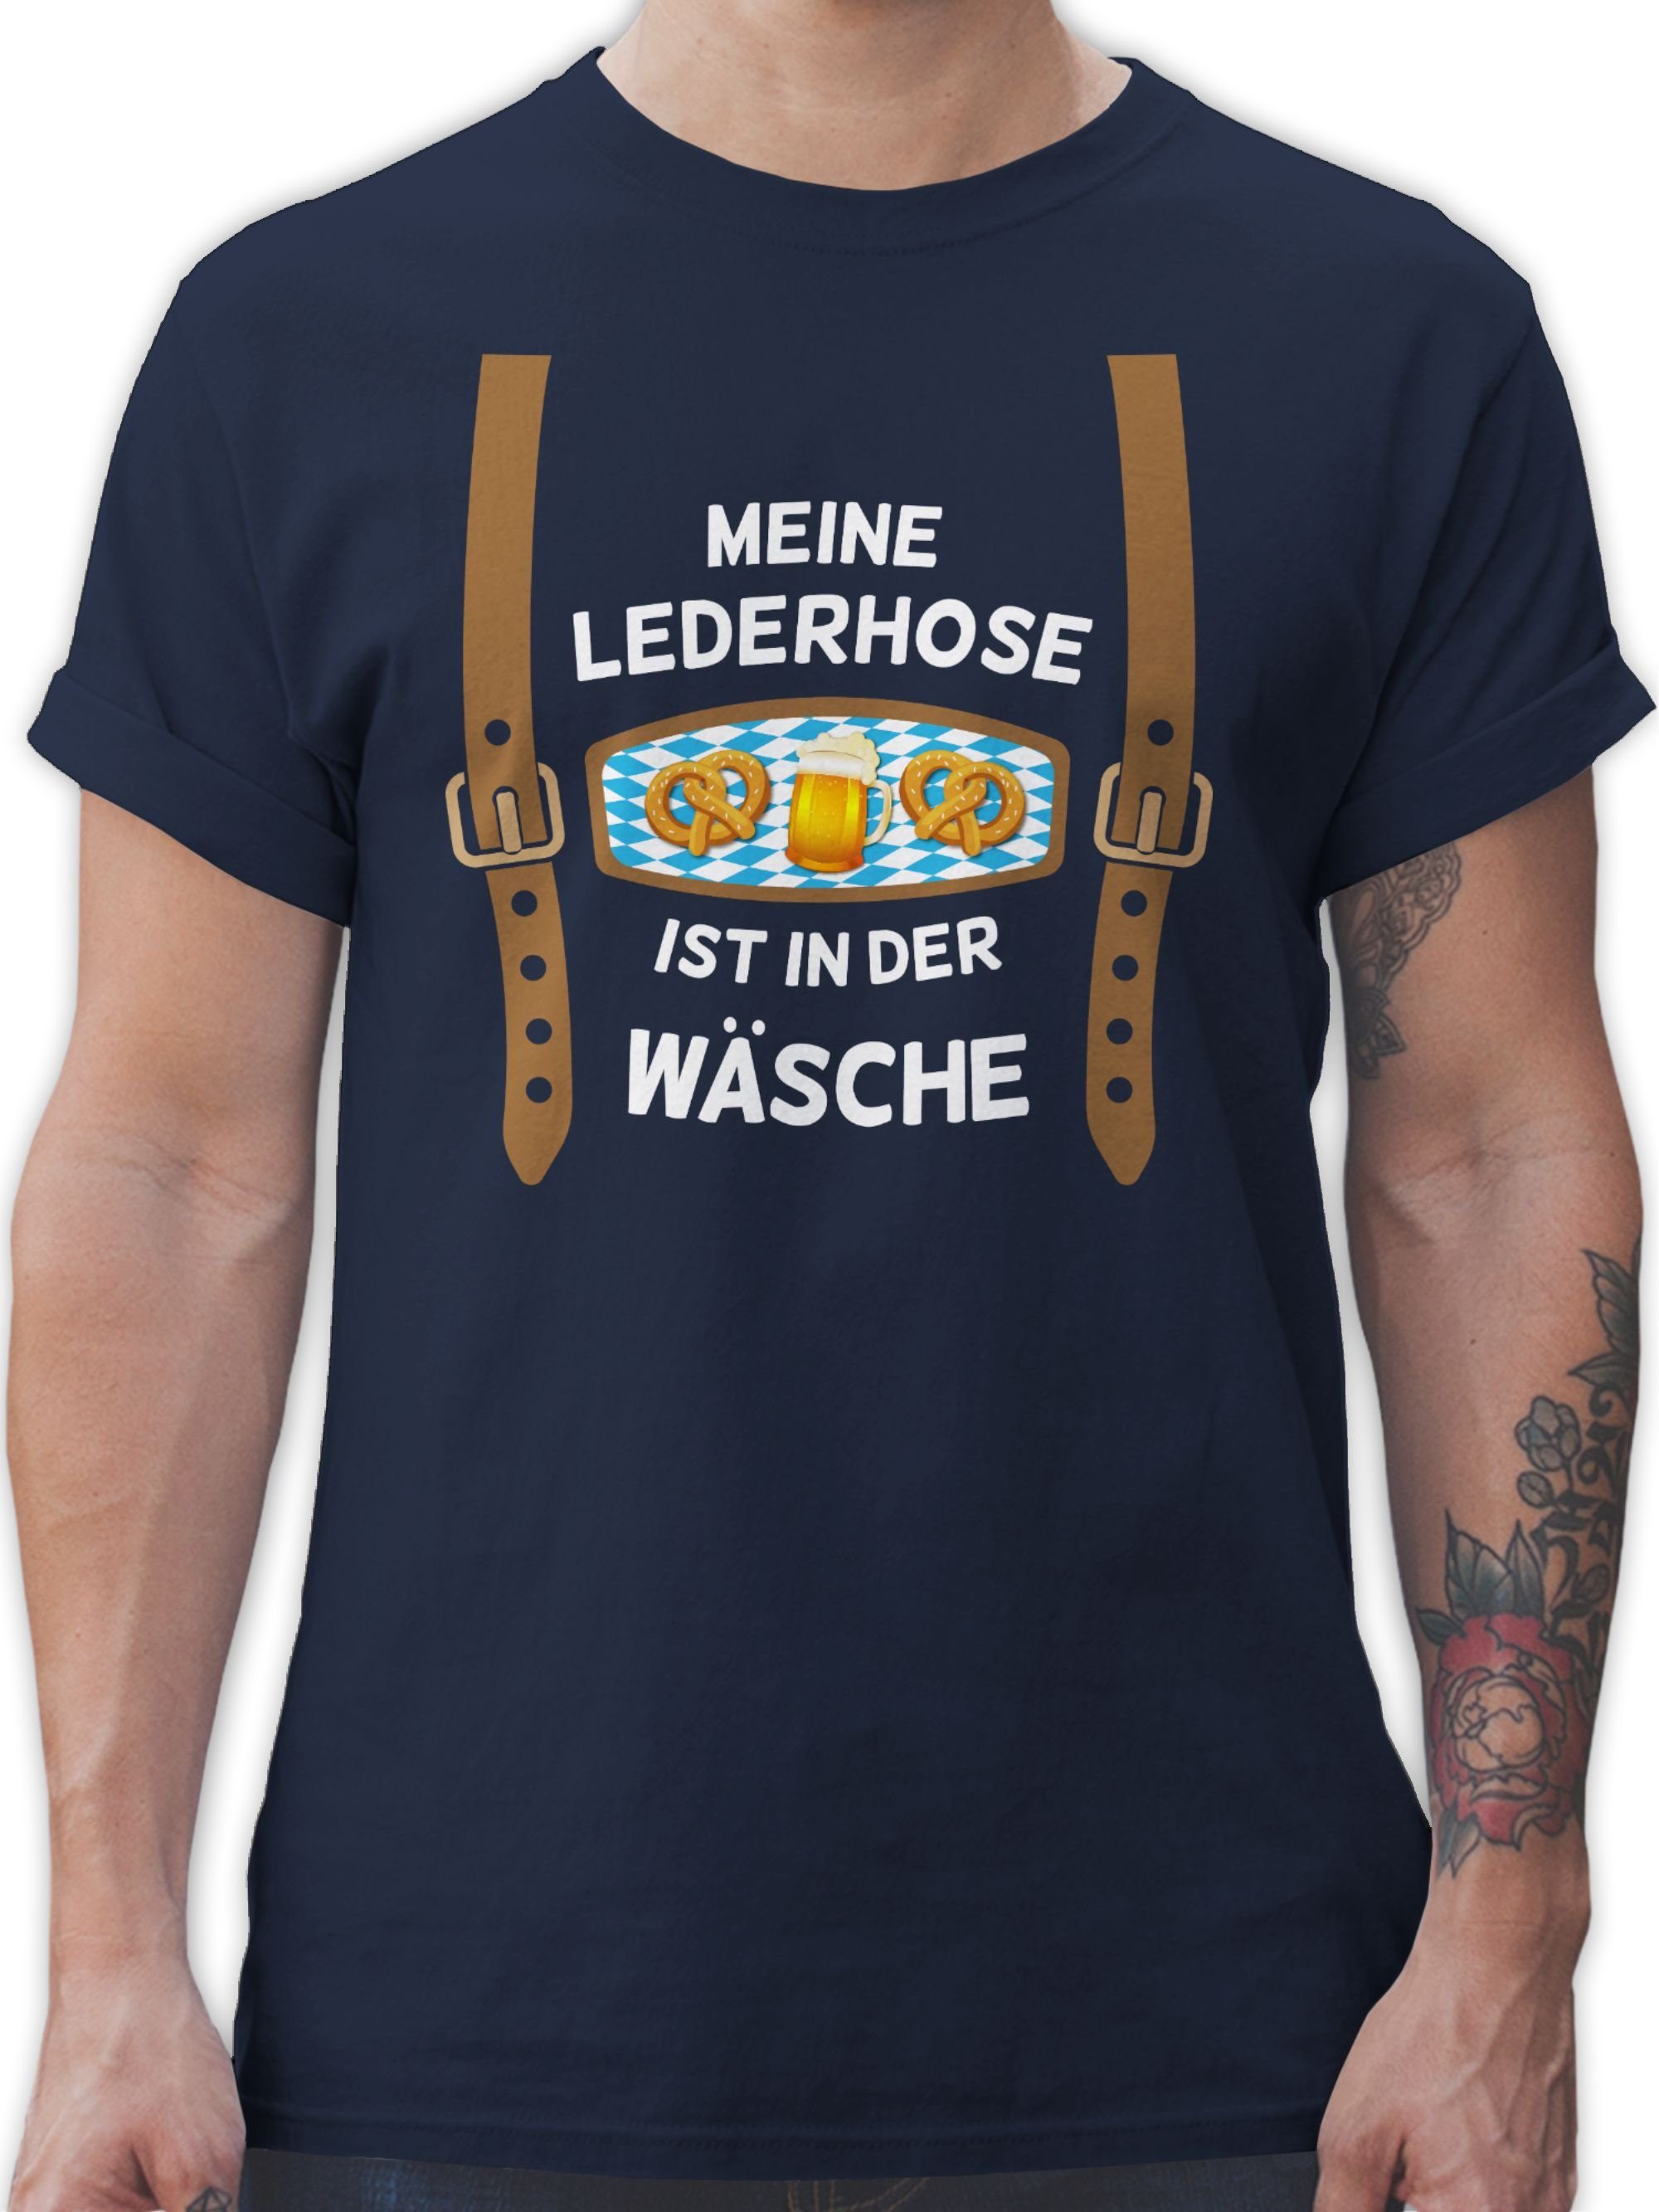 für Blau Herren Shirtracer Oktoberfest Mode Lederhose 2 der Wäsche Meine Navy T-Shirt ist in